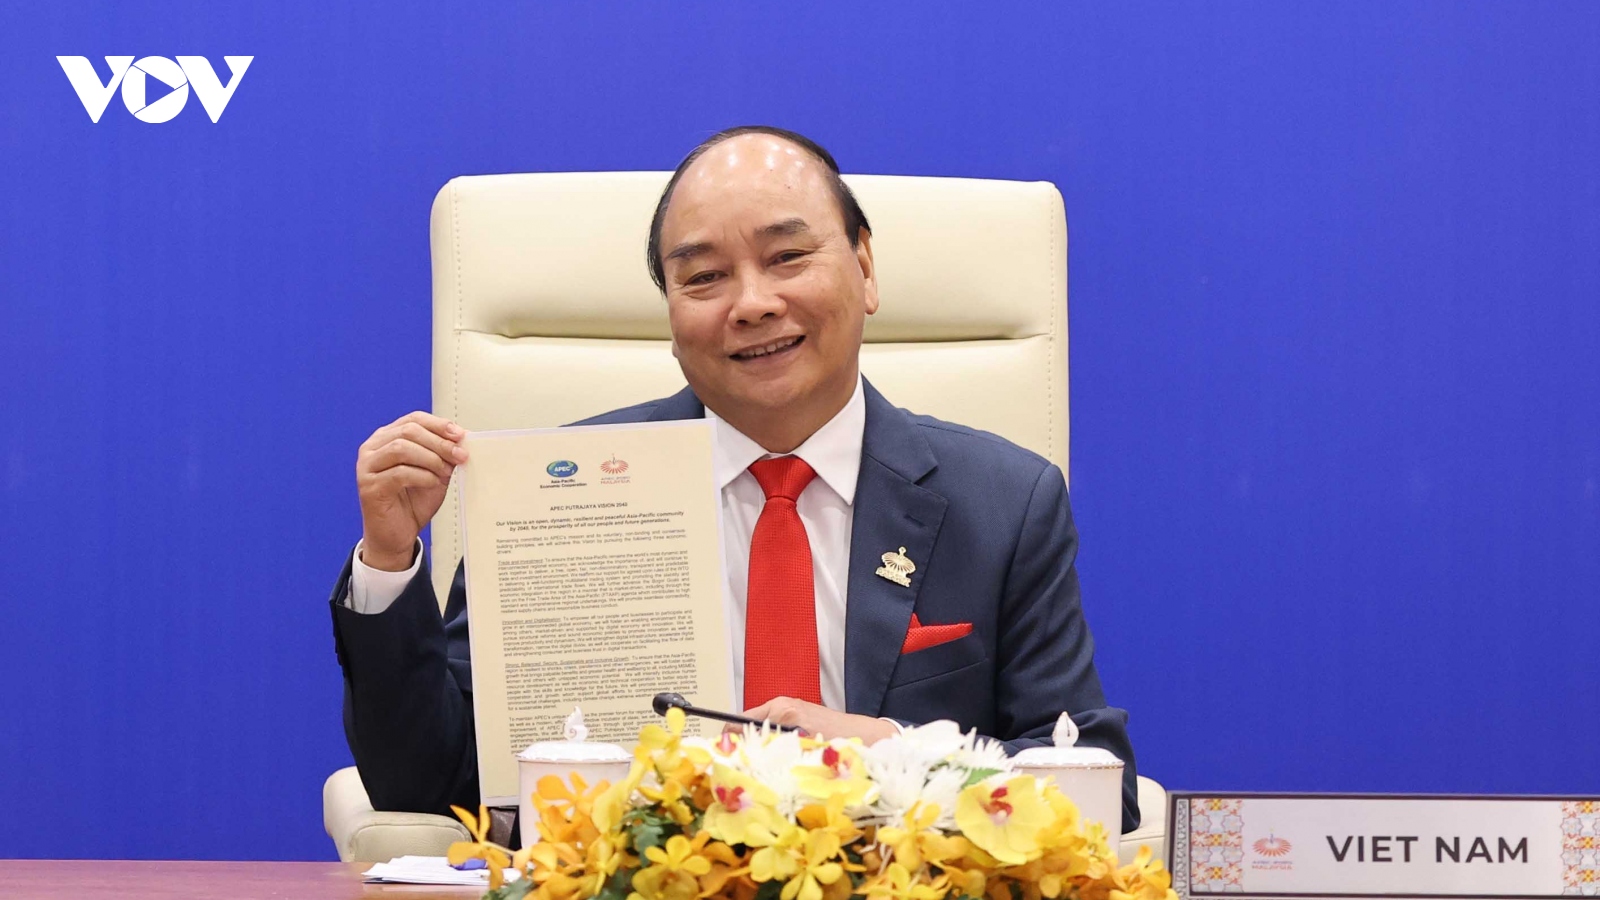 Thủ tướng đưa ra đề xuất có ý nghĩa chiến lược thúc đẩy hợp tác APEC 